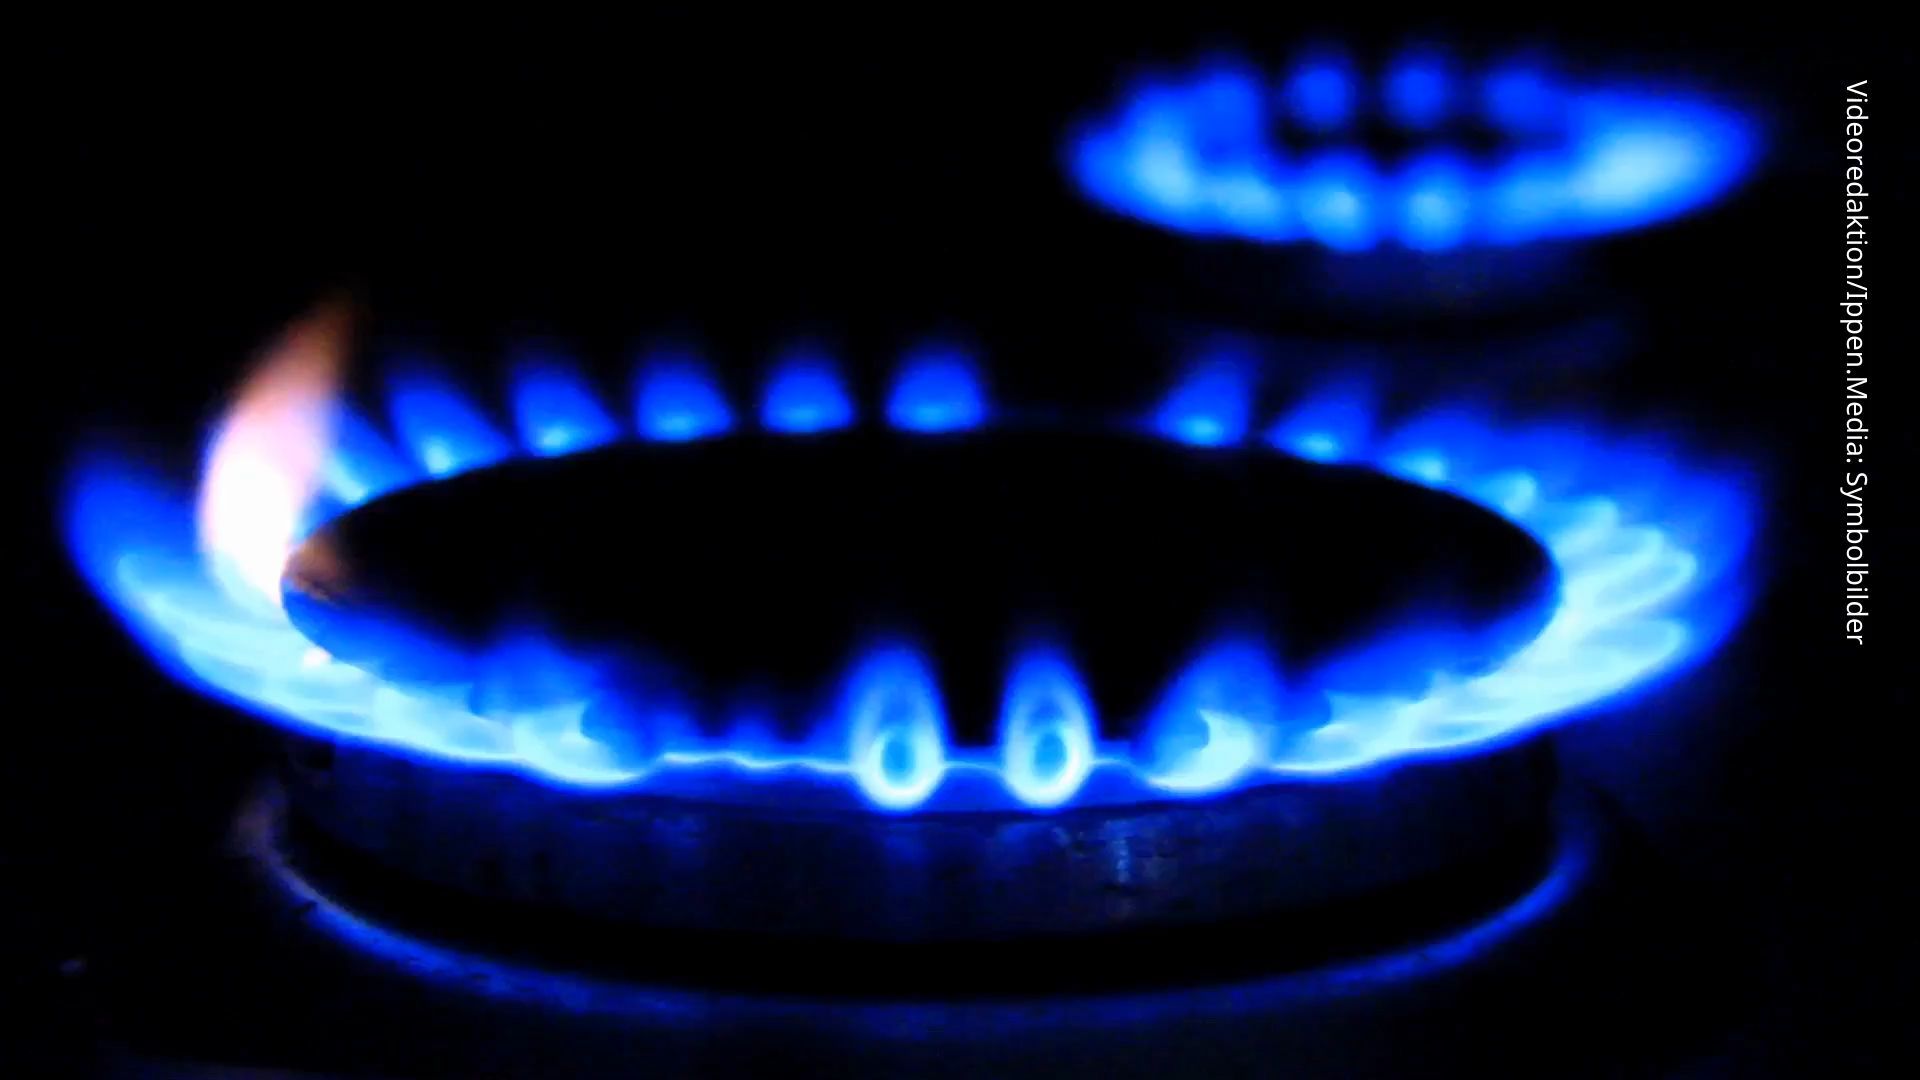 Gasumlage - so teuer wird es für Gaskunden